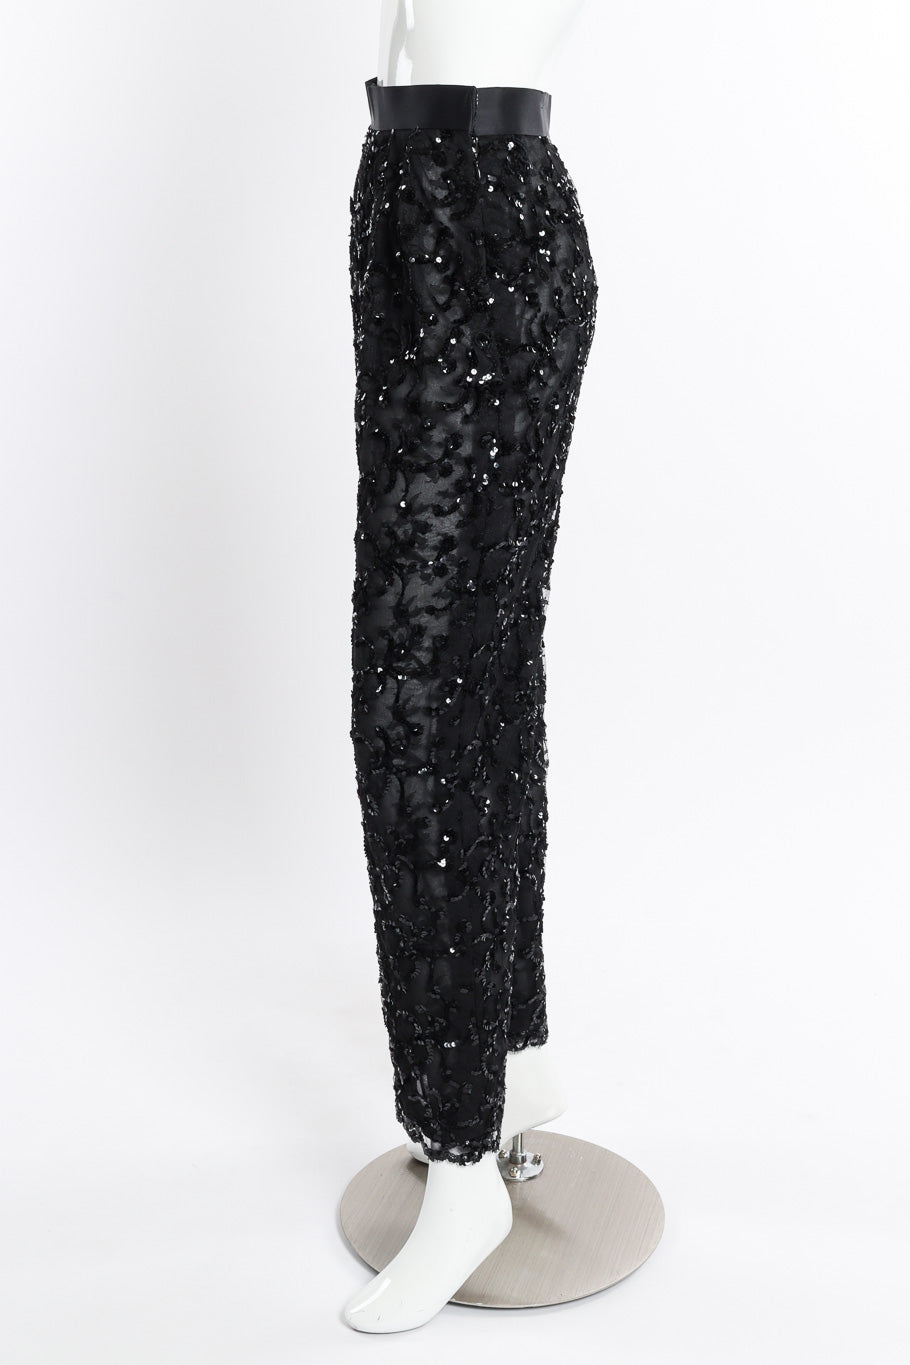 Vintage Bill Blass Sequin Lace Pant side on mannequin @recessla